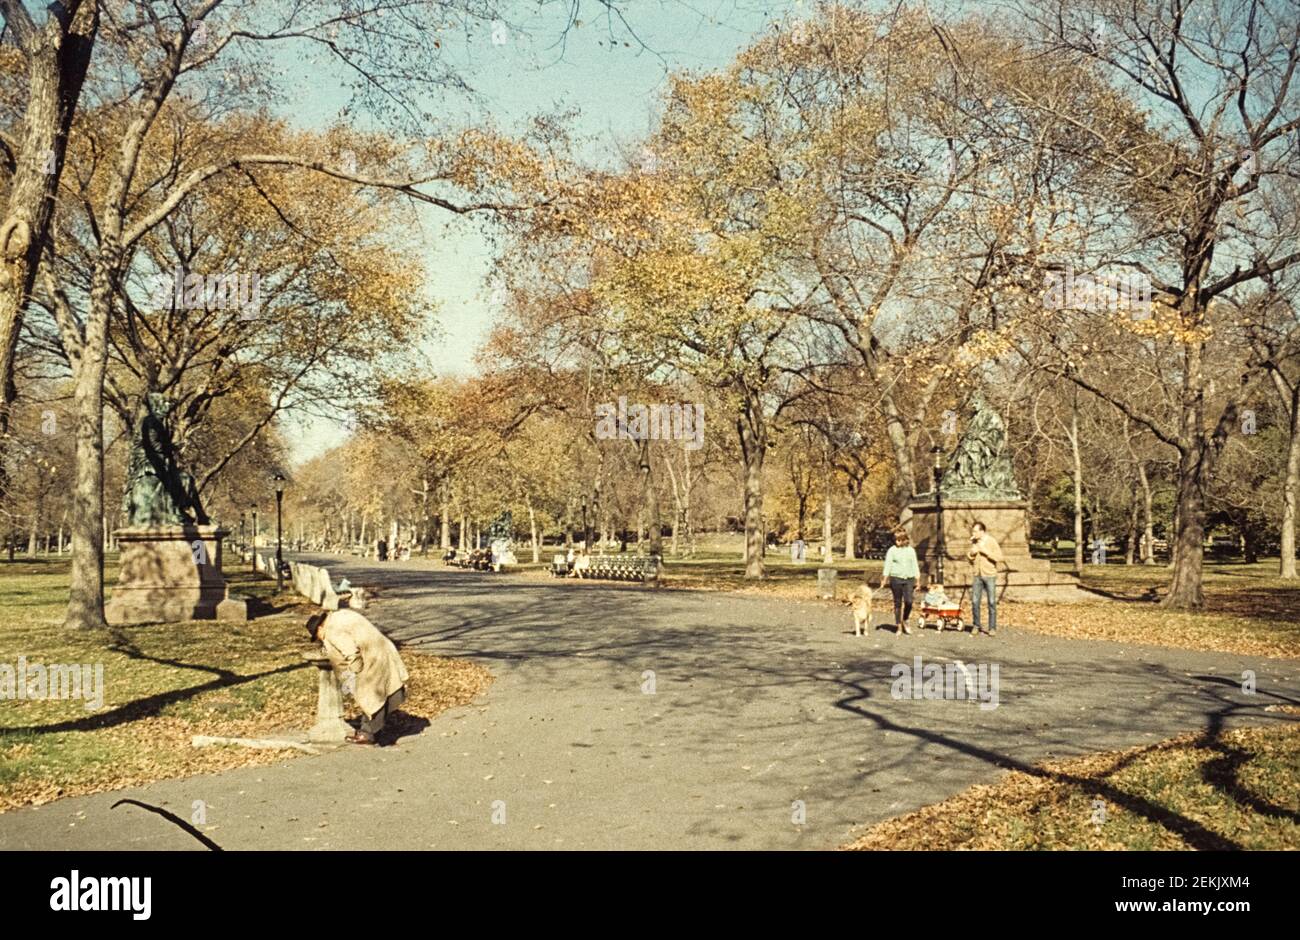 Sono poche le persone che stanno per arrivare. Un uomo sta bevendo da una fontana. Una famiglia va per una passeggiata. Literary Walk, Manhattan, Central Park, New York City, 1965 Foto Stock